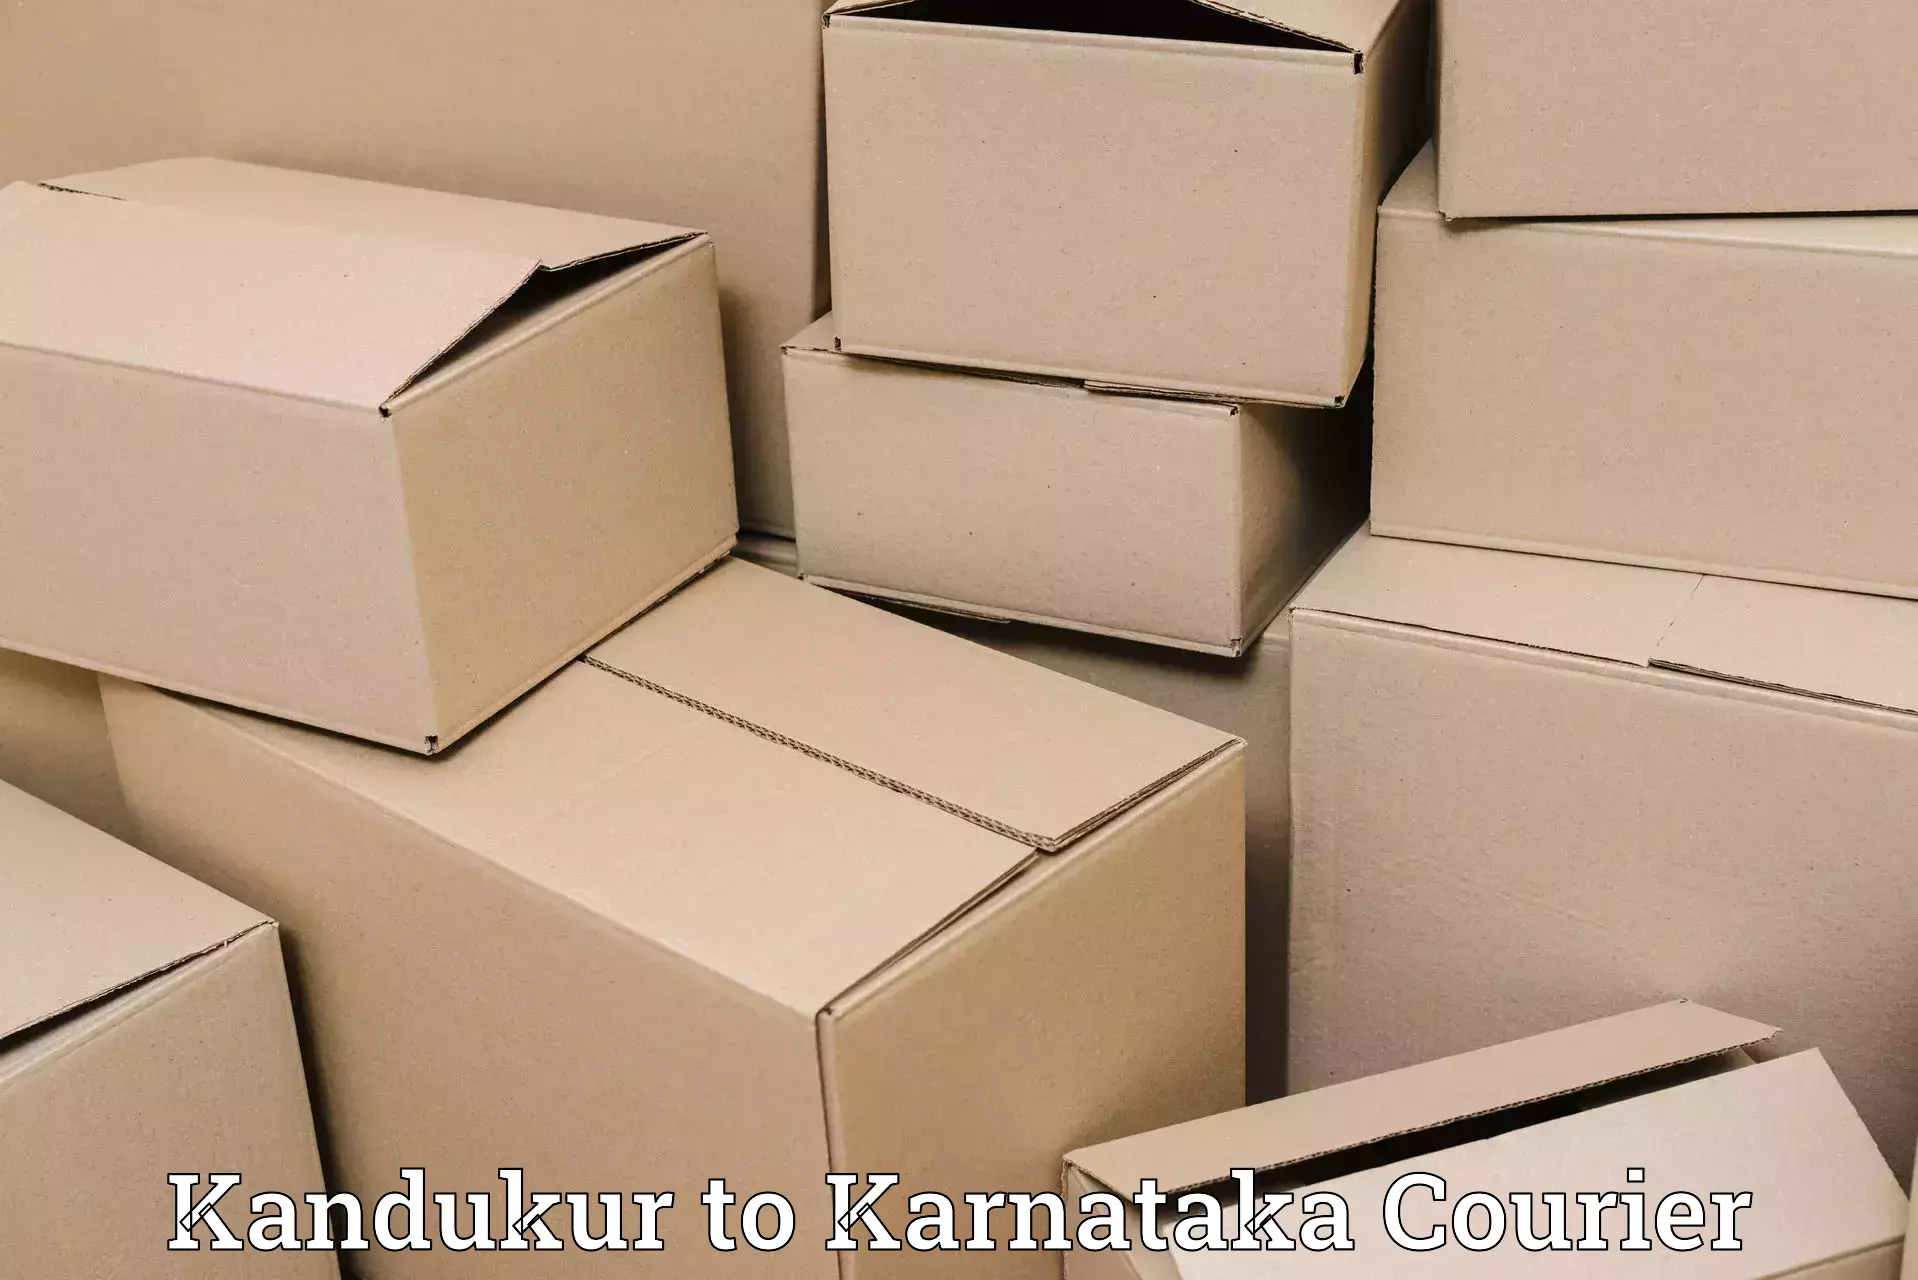 Specialized shipment handling Kandukur to Kalaburagi